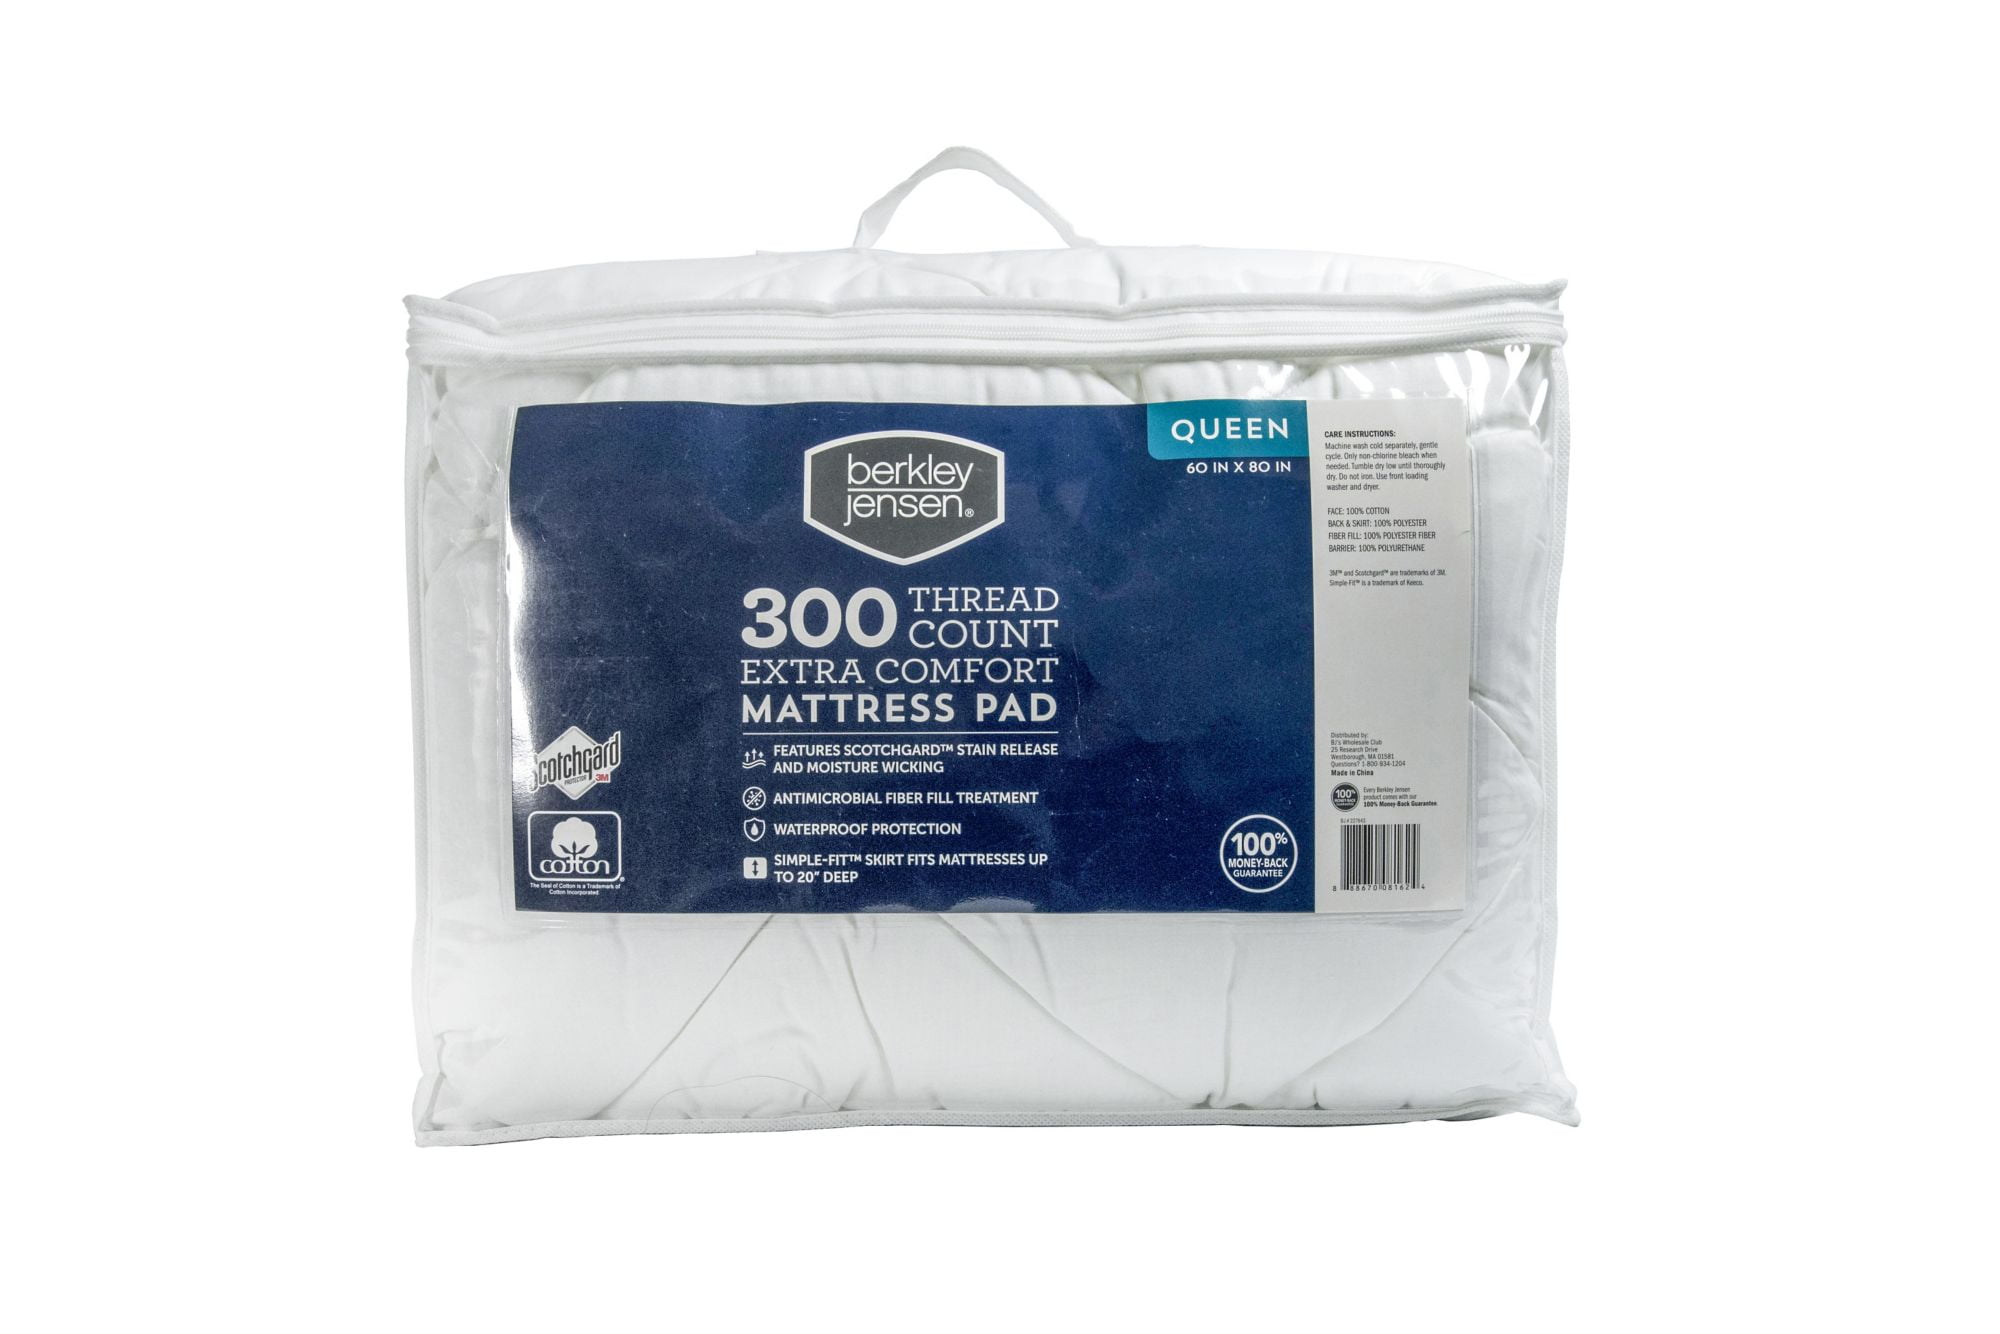 Berkley Jensen Extra Comfort Waterproof Protection 100% Cotton 60″ x 80″  Queen-Size Mattress Pad, 1ZA024AQNWHT - Walmart.com